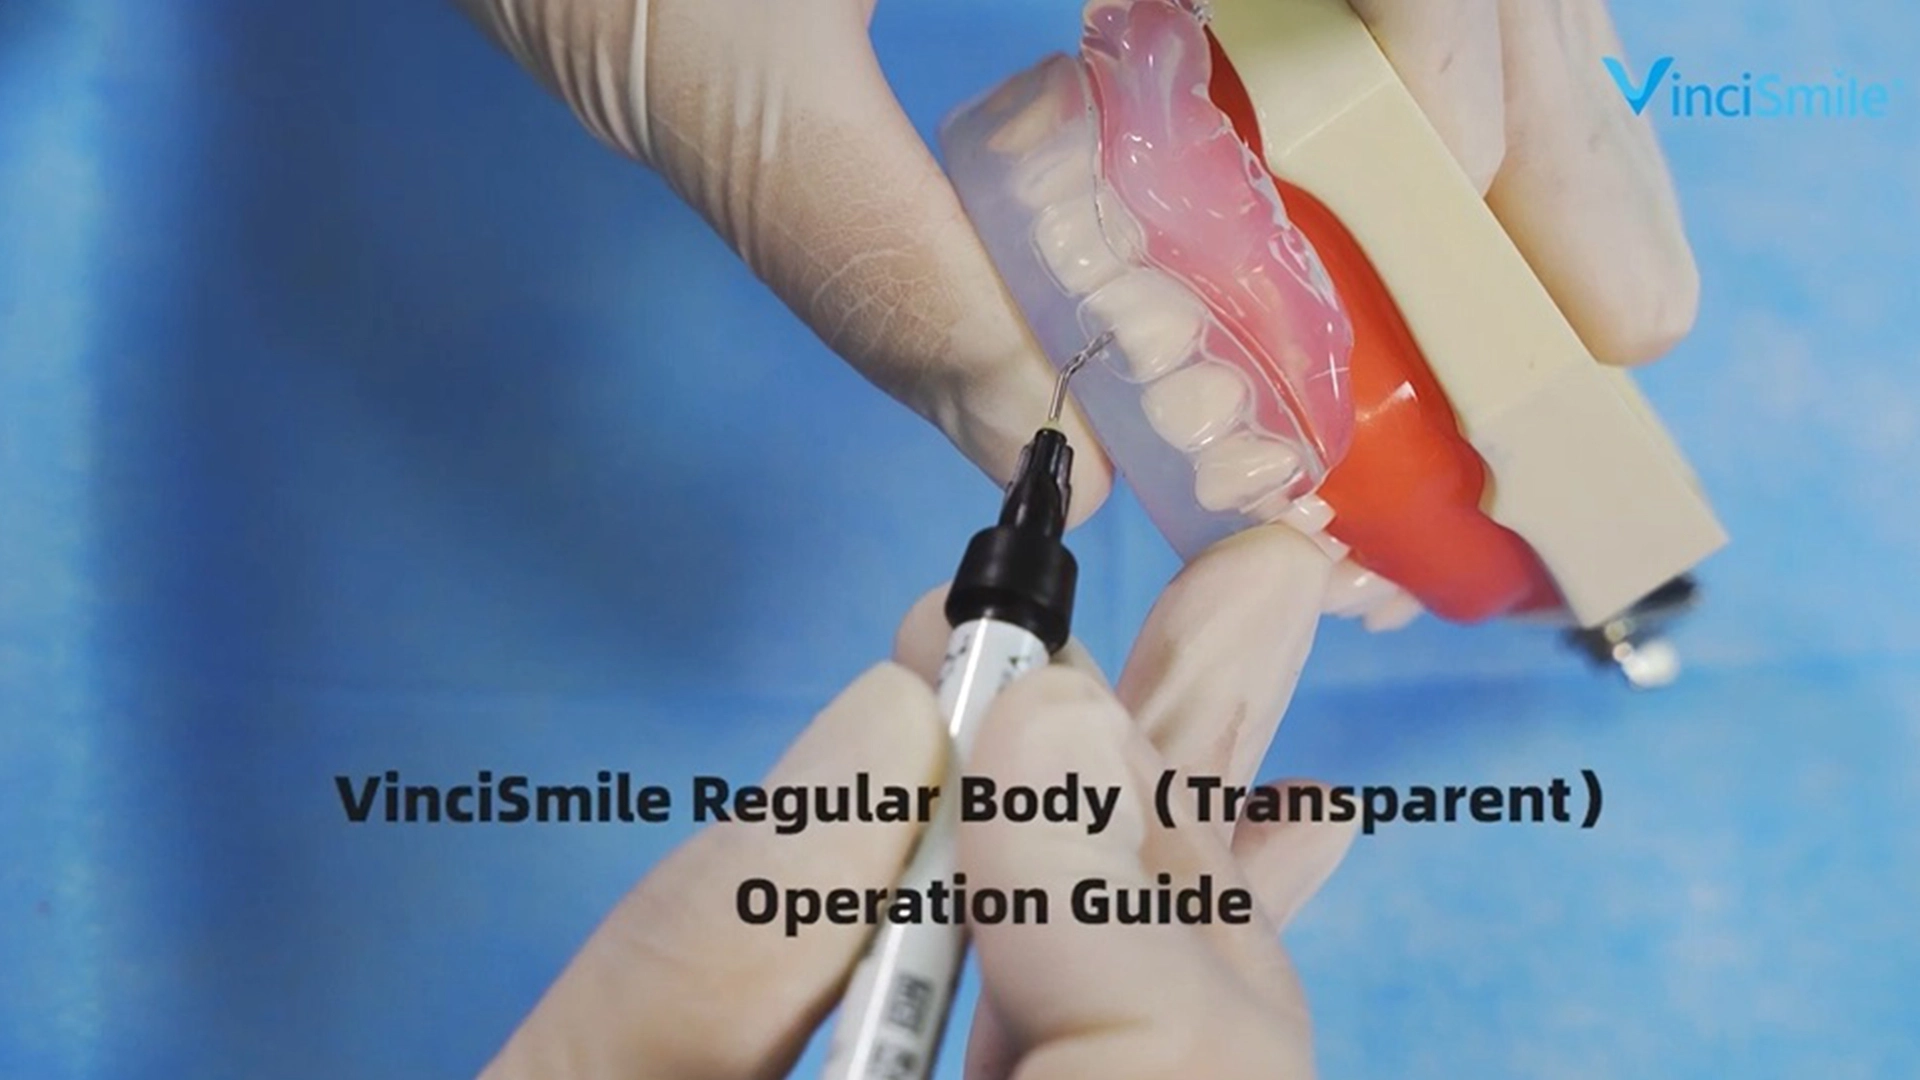 VinciSmile Regular Body (Transparent) Operation Guide